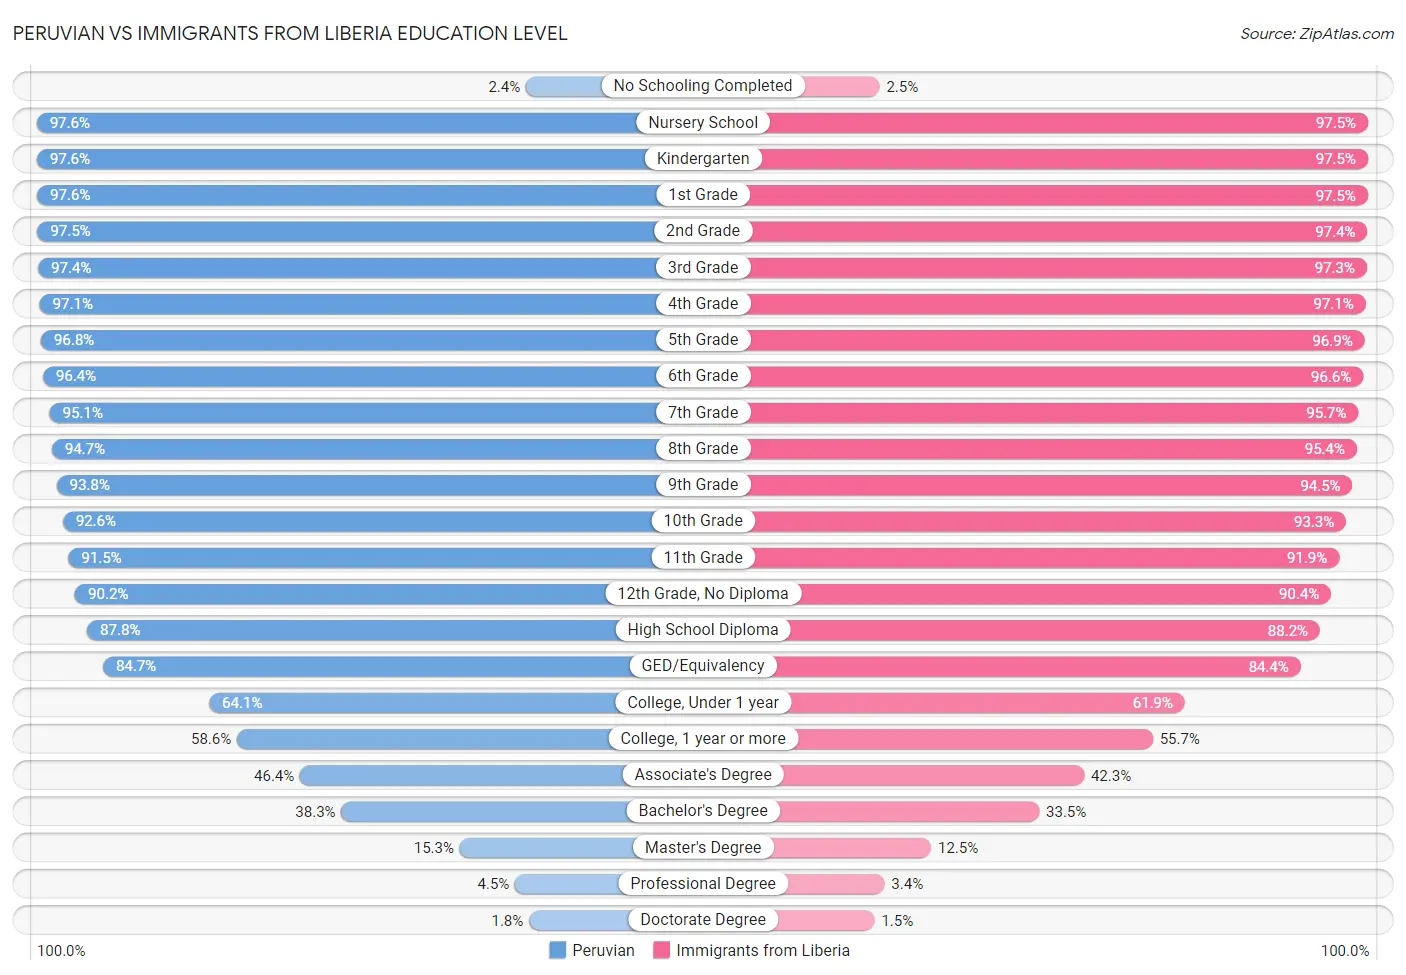 Peruvian vs Immigrants from Liberia Education Level